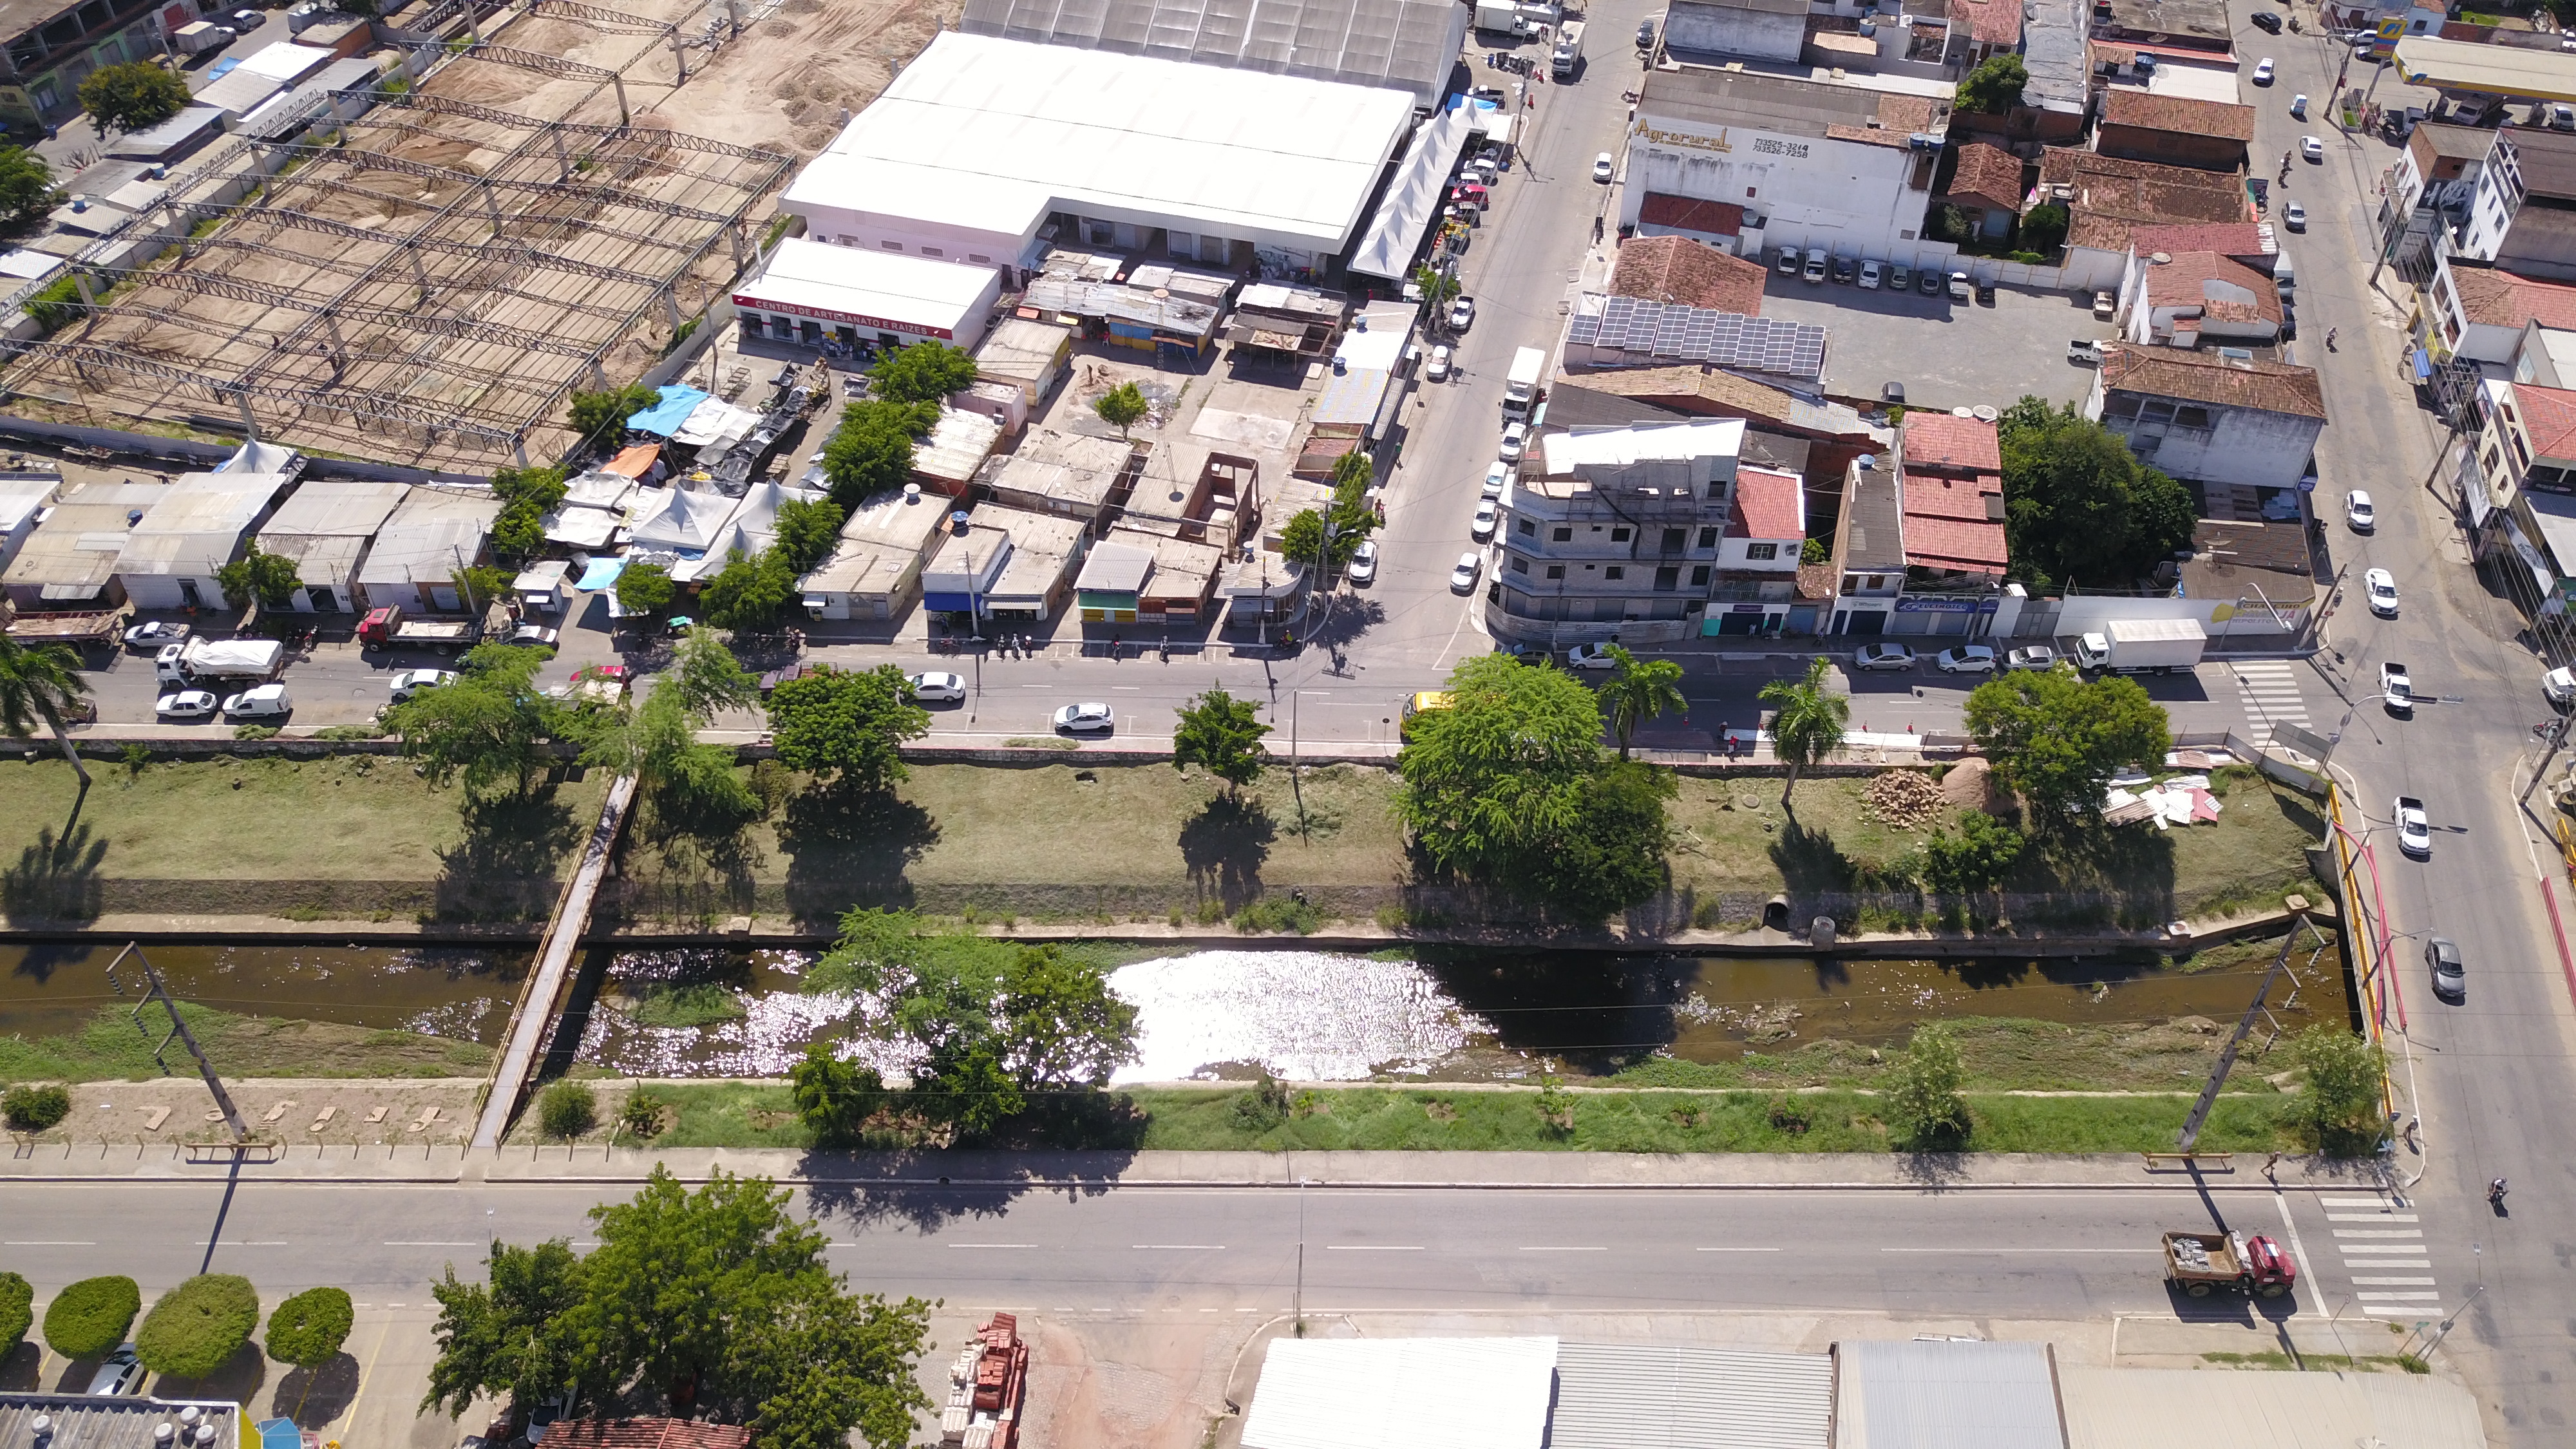 ESTACIONAMENTO - Construção de estacionamento para atender as necessidades do Centro de Abastecimento Vicente Grilo